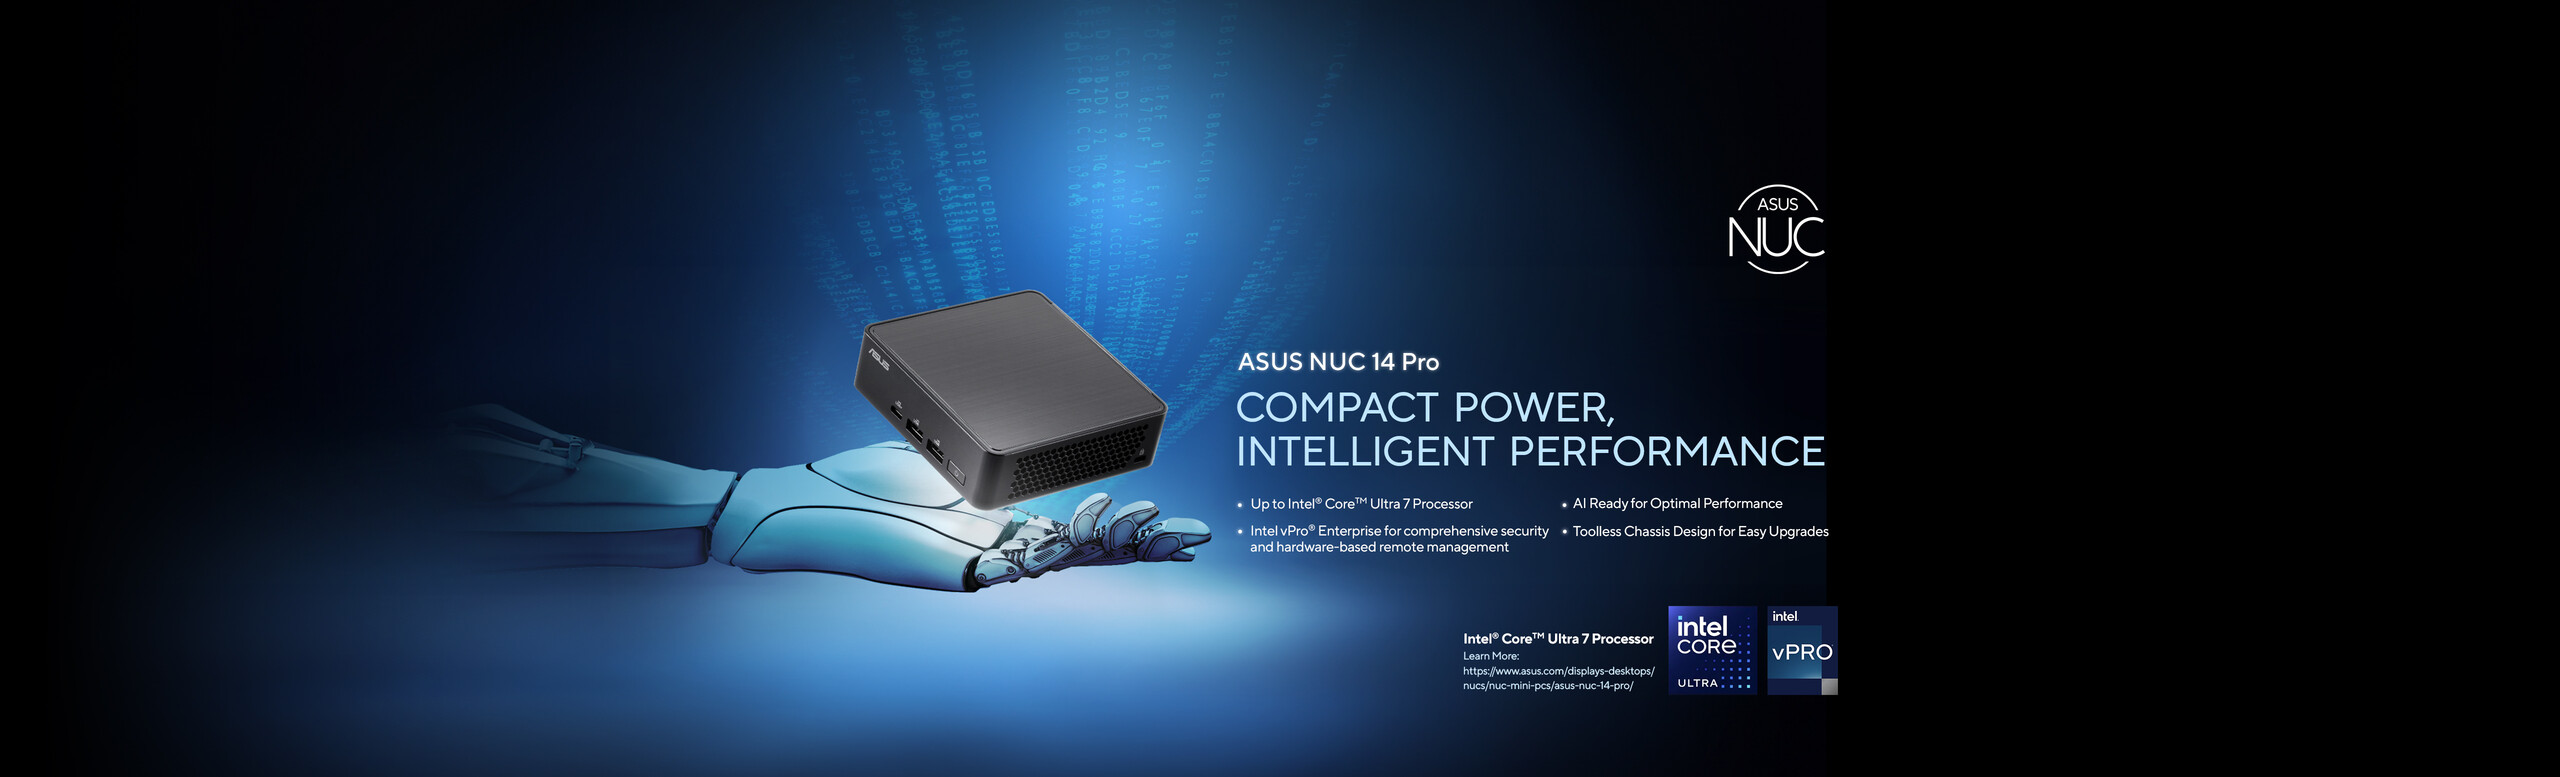 ASUS NUC 14 Pro Mini PC